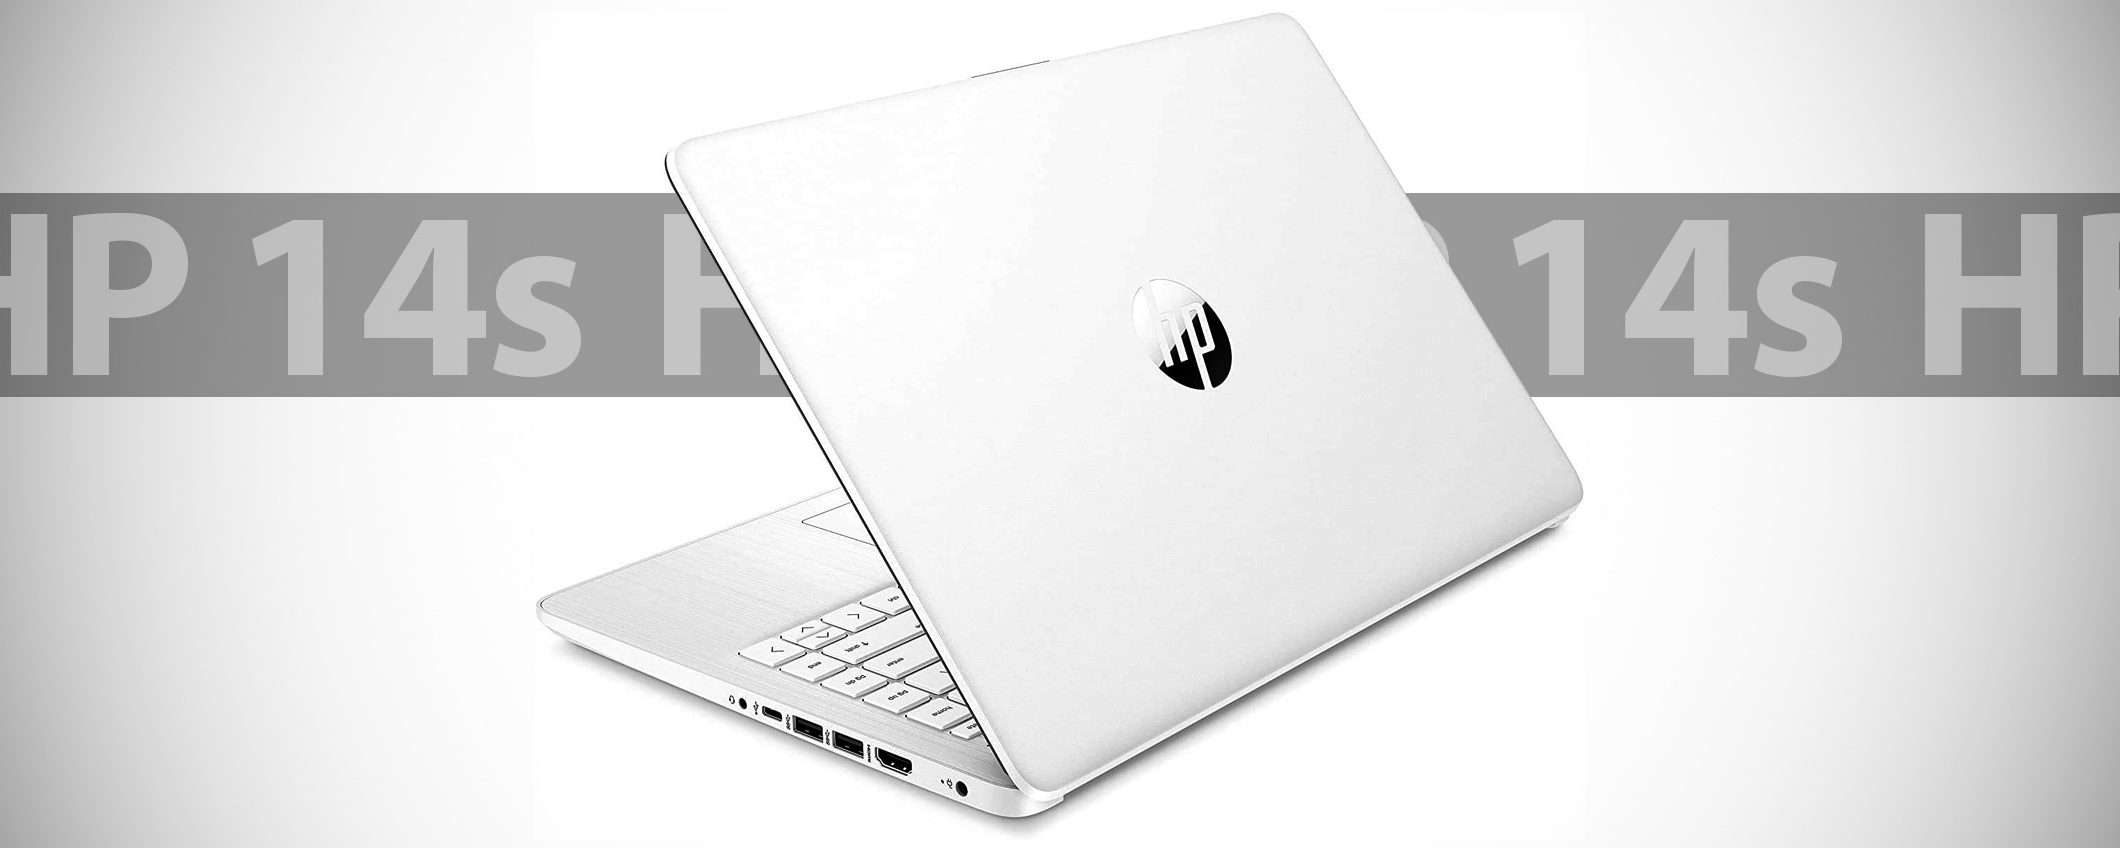 HP 14s: il laptop oggi al prezzo minimo di sempre